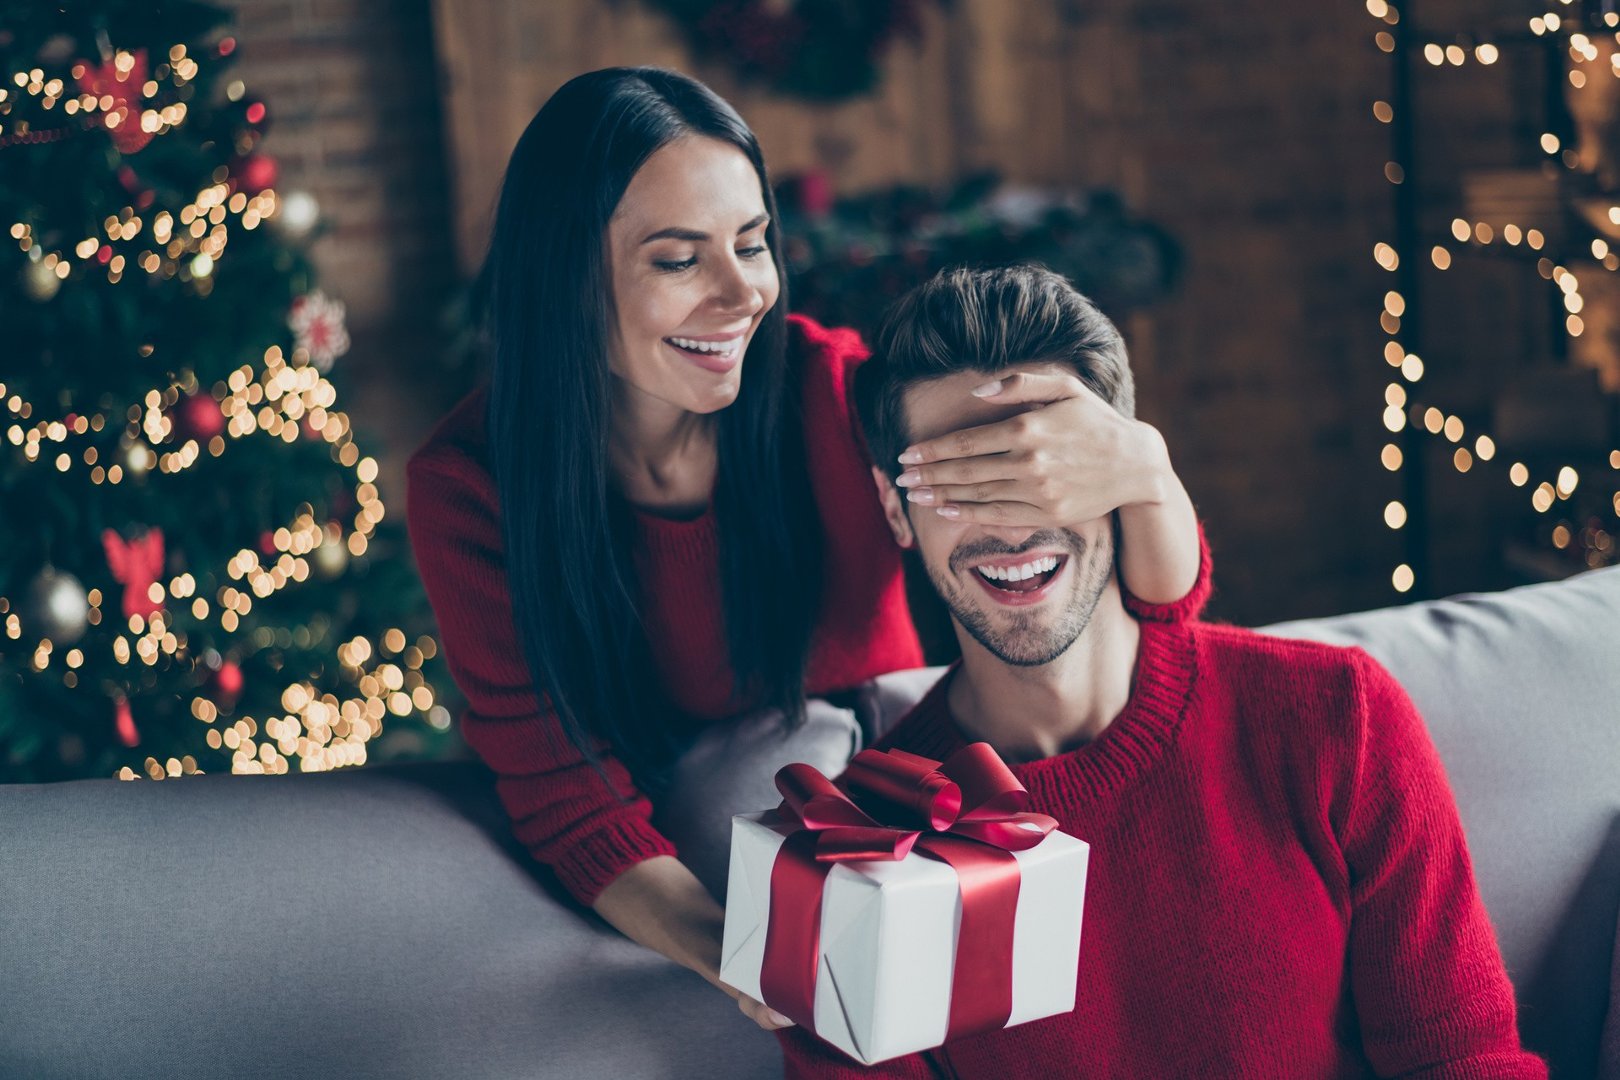 Święta Boże Narodzenie 2021 – jaki prezent wybrać dla mężczyzny? Znajdź  prezent dla męża pod choinkę | Portal i.pl